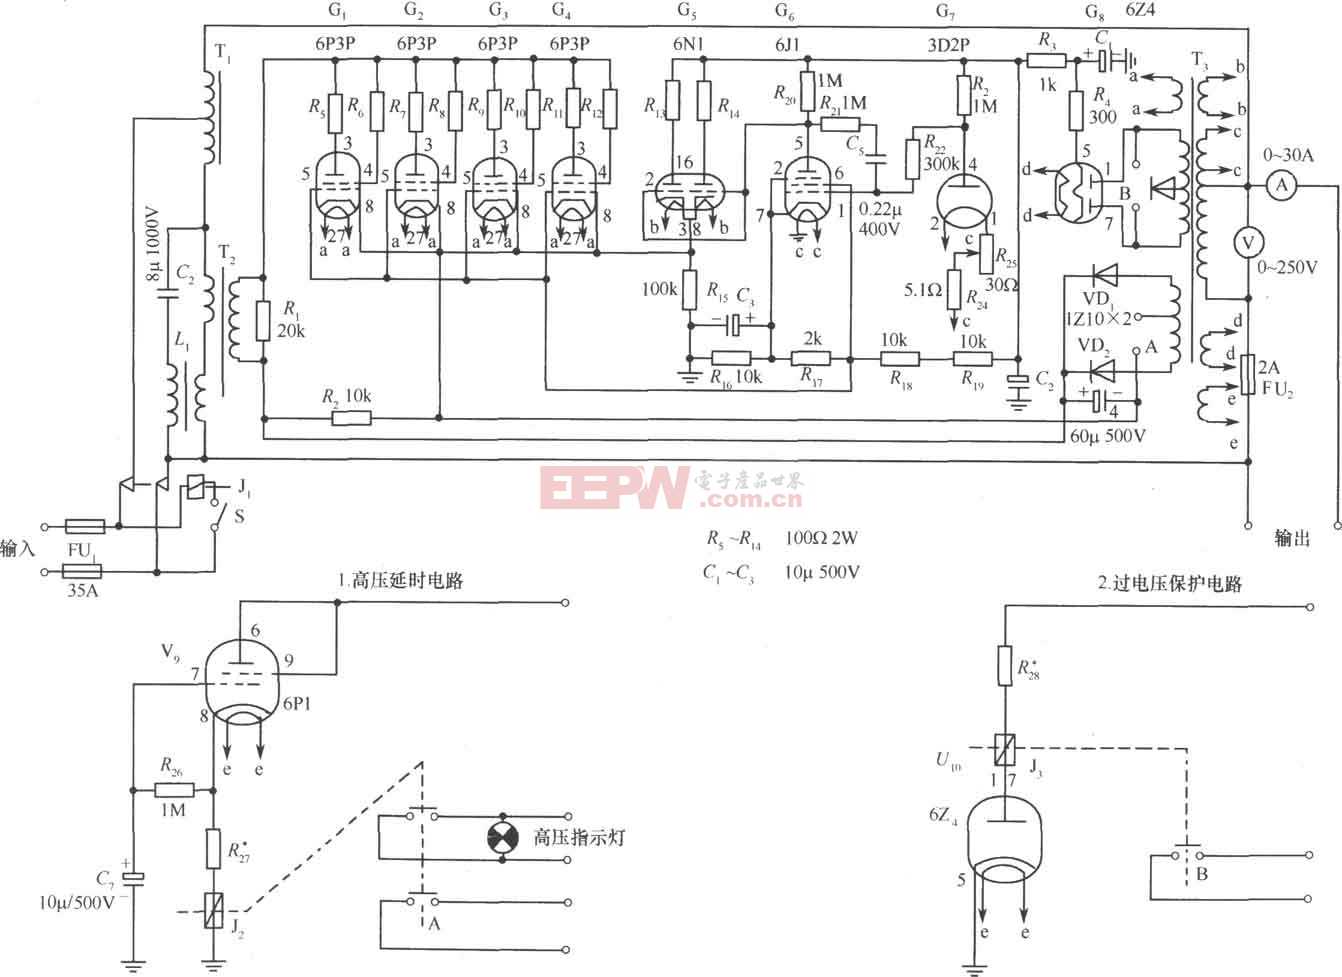 614-B2(3kVA)交流稳压器电路